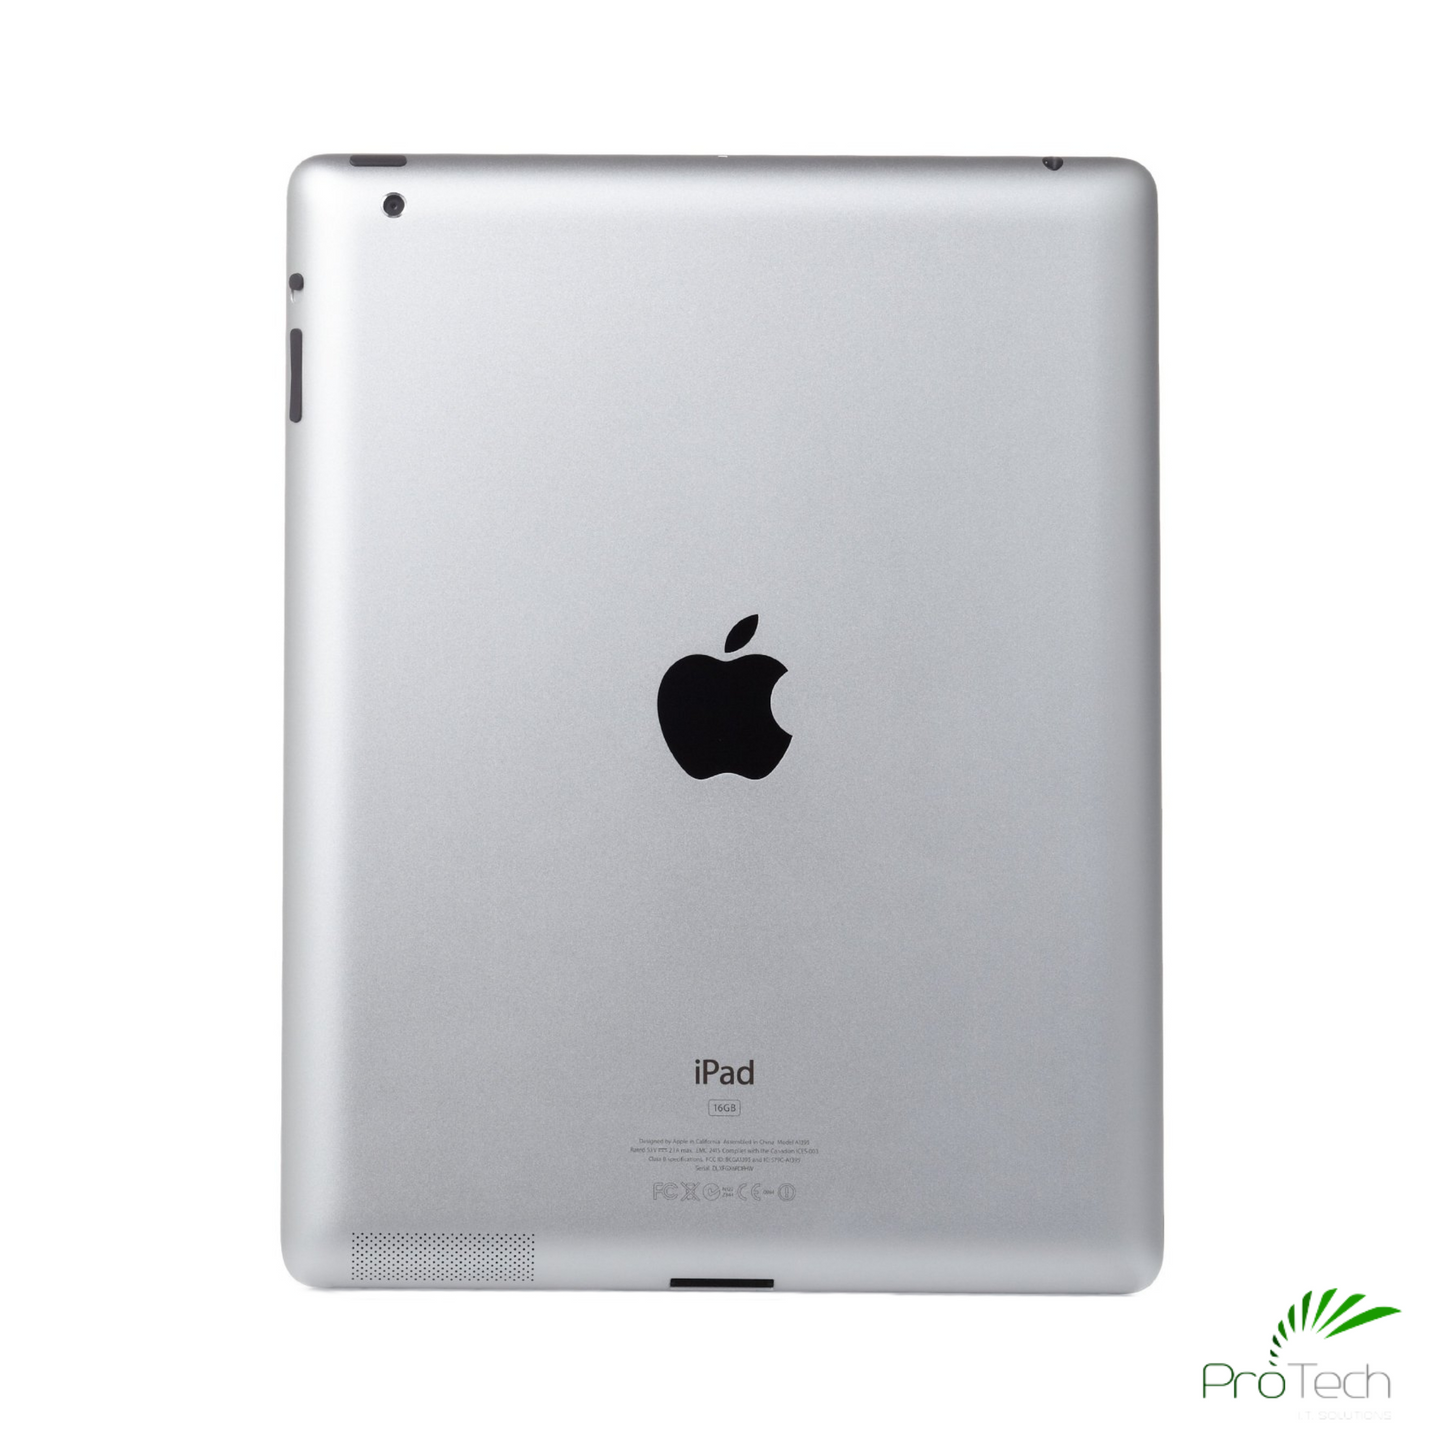 Apple iPad 2nd Generation | 16GB + 64GB | Wi-Fi